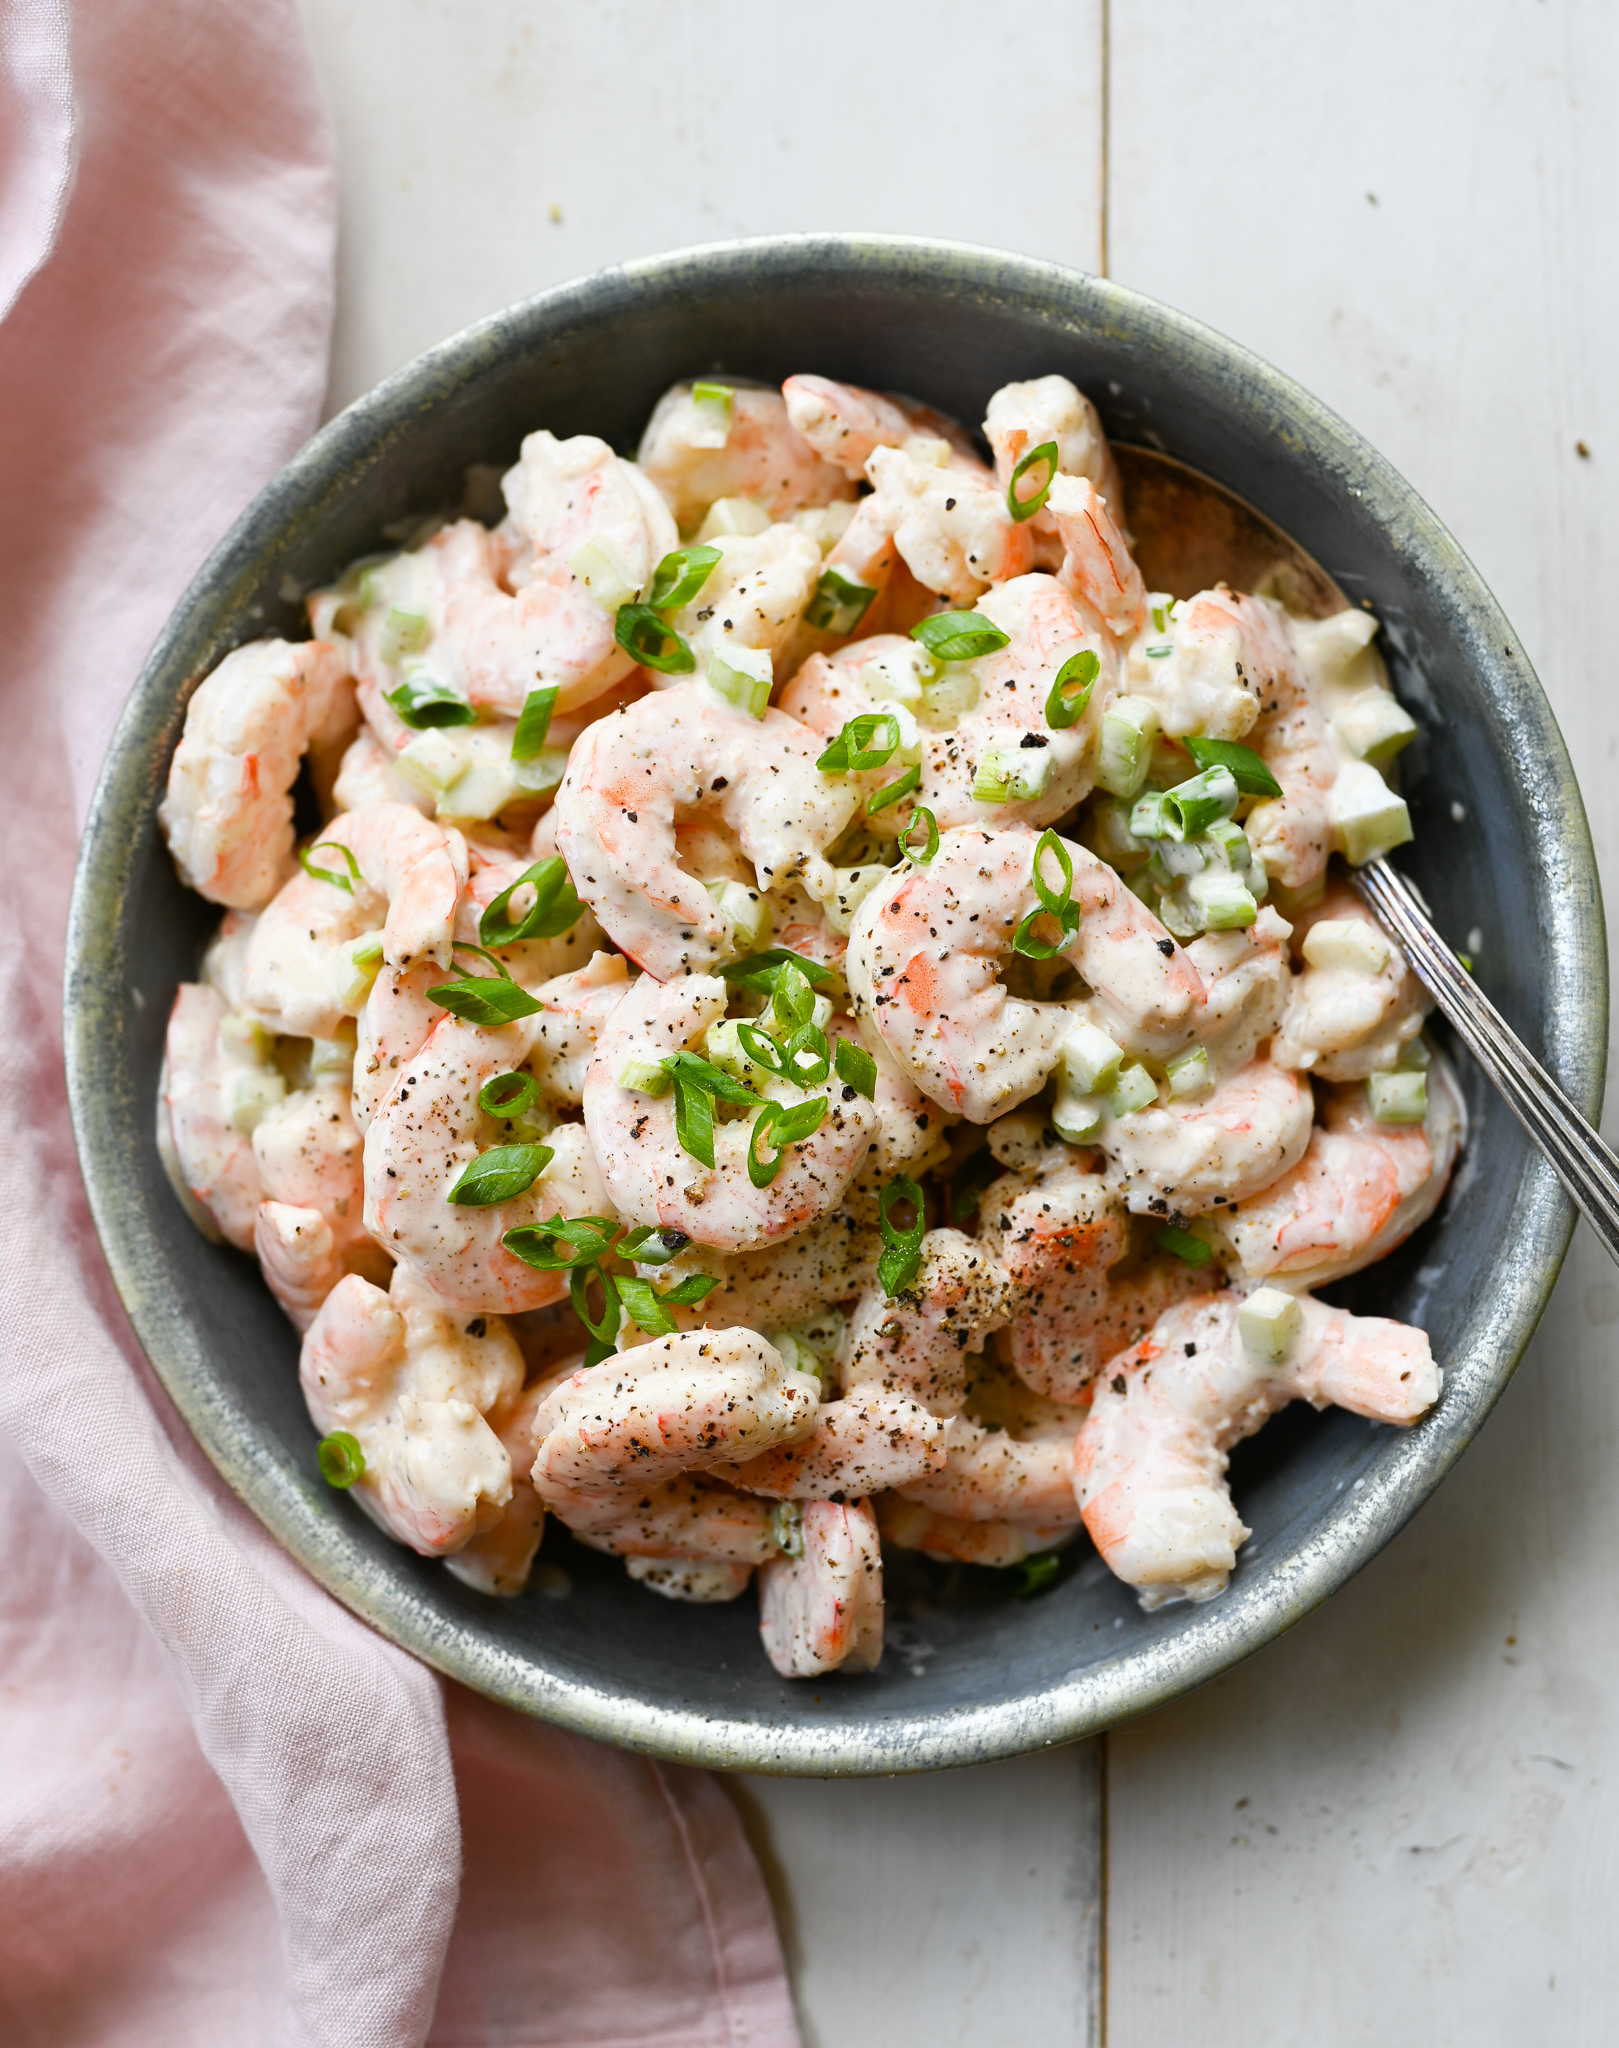 https://www.onceuponachef.com/images/2019/05/shrimp-salad.jpg